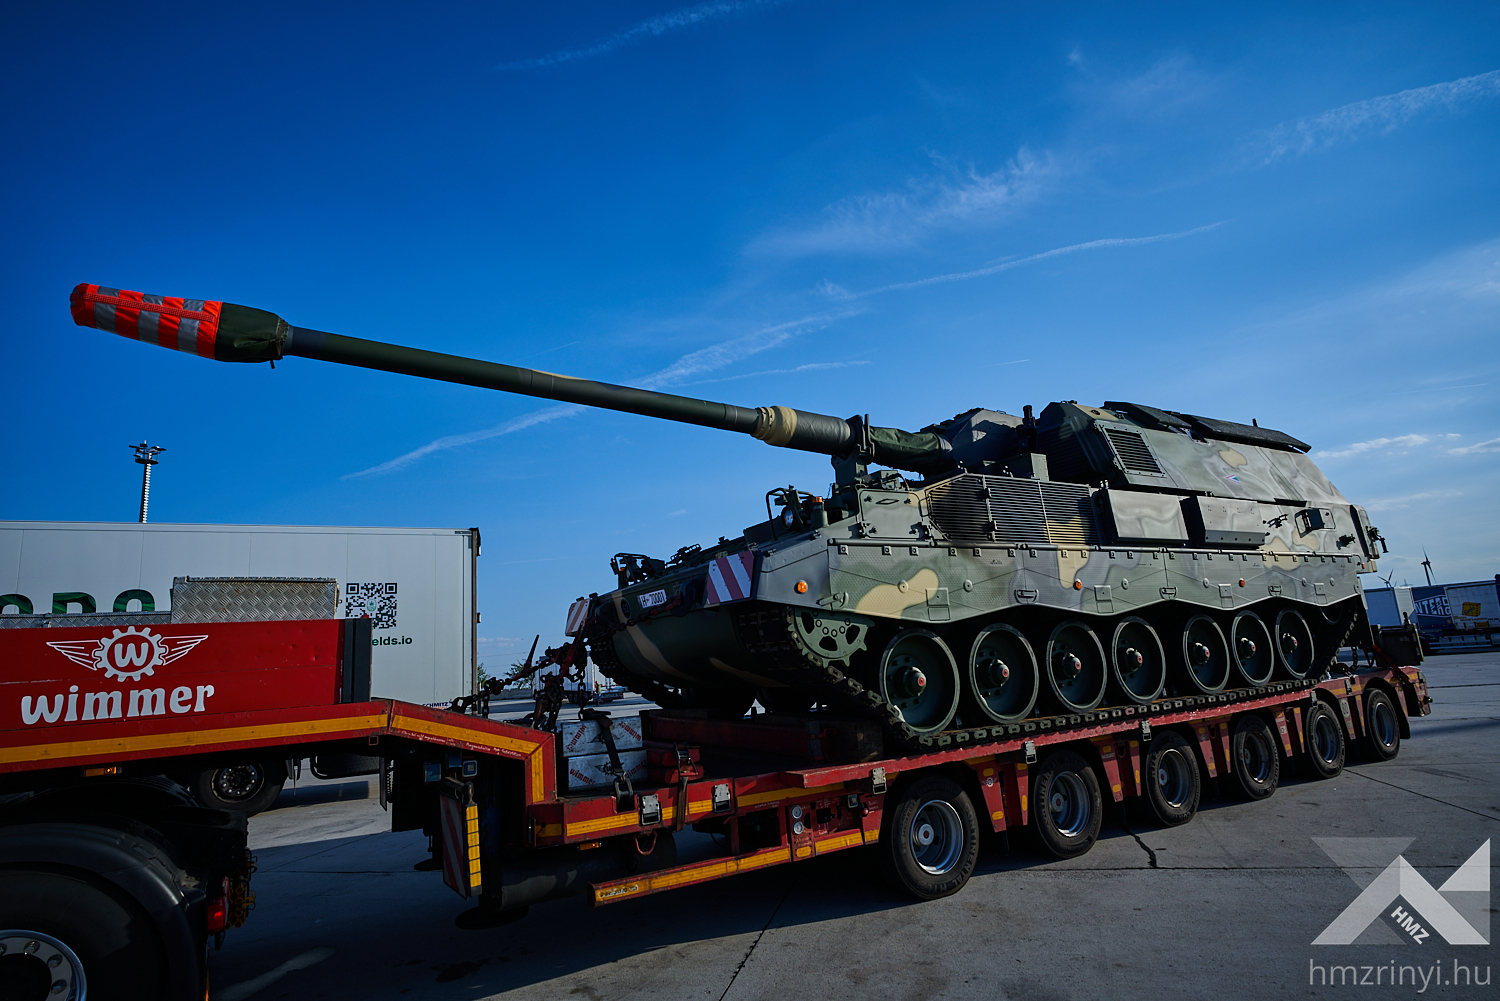 Węgry otrzymują pierwsze samobieżne haubice Panzerhaubitze 2000 w ramach kontraktu o wartości 565 mln USD